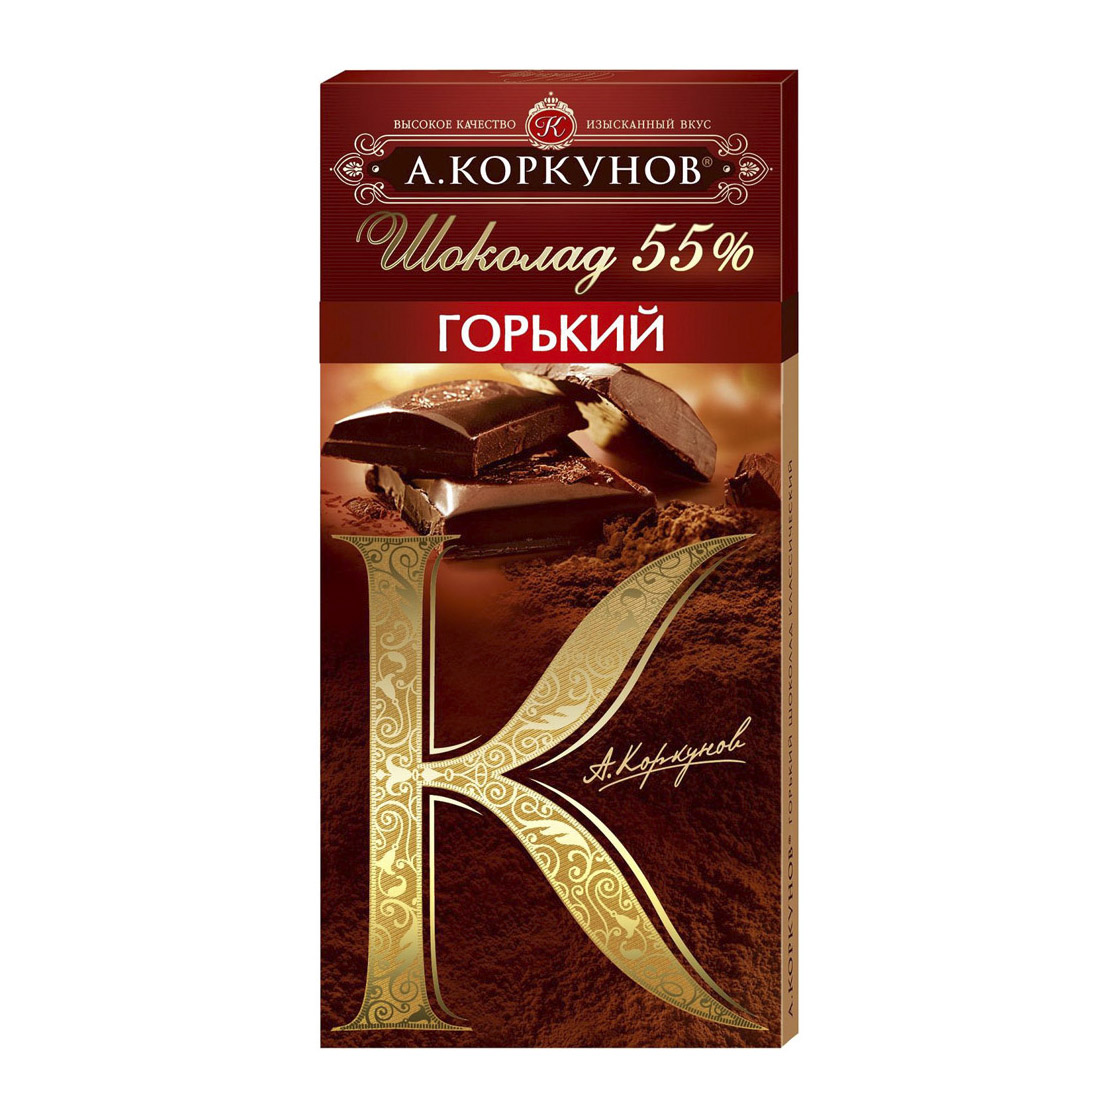 Шоколад А.Коркунов Горький 55% 90 г шоколад горький фабрика крупской особый элитный 90 г